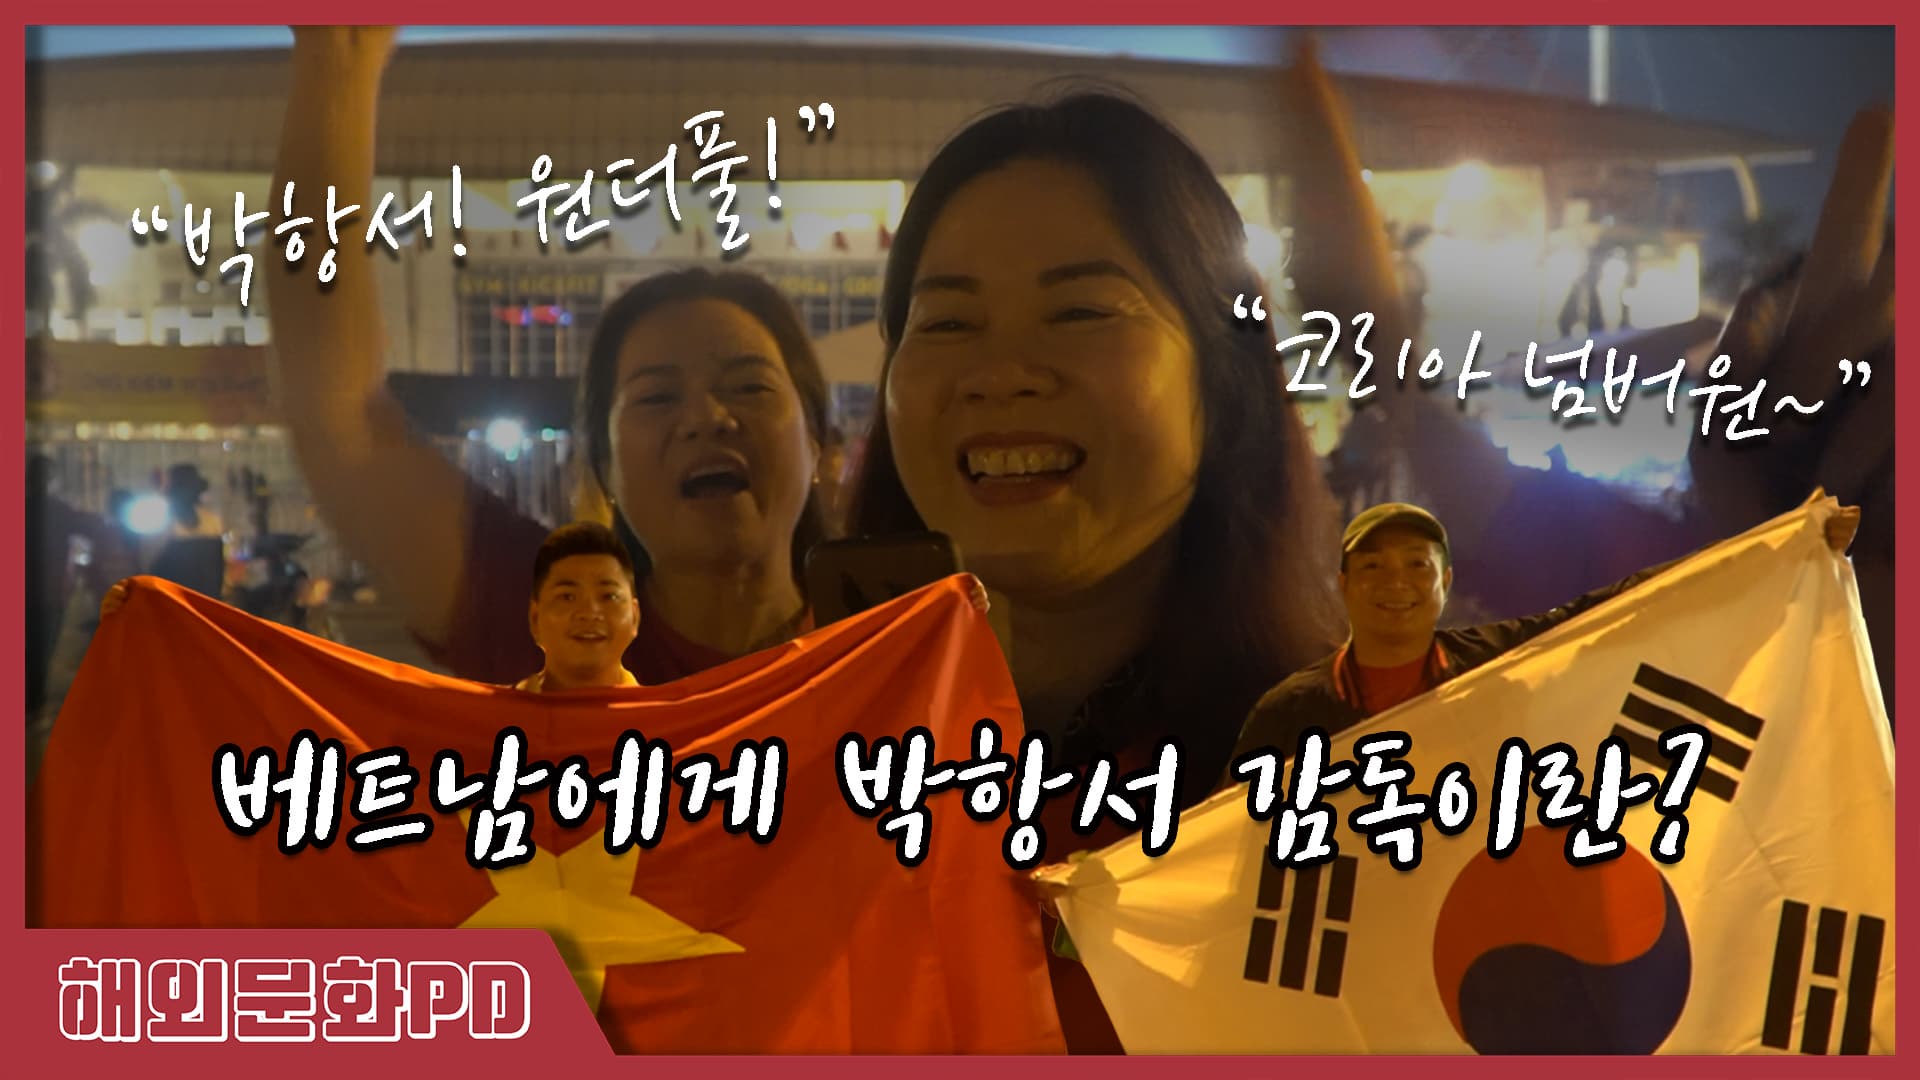 [해외문화PD 기획영상] 베트남 축구 경기장 앞에서 박항서 감독을 묻다!